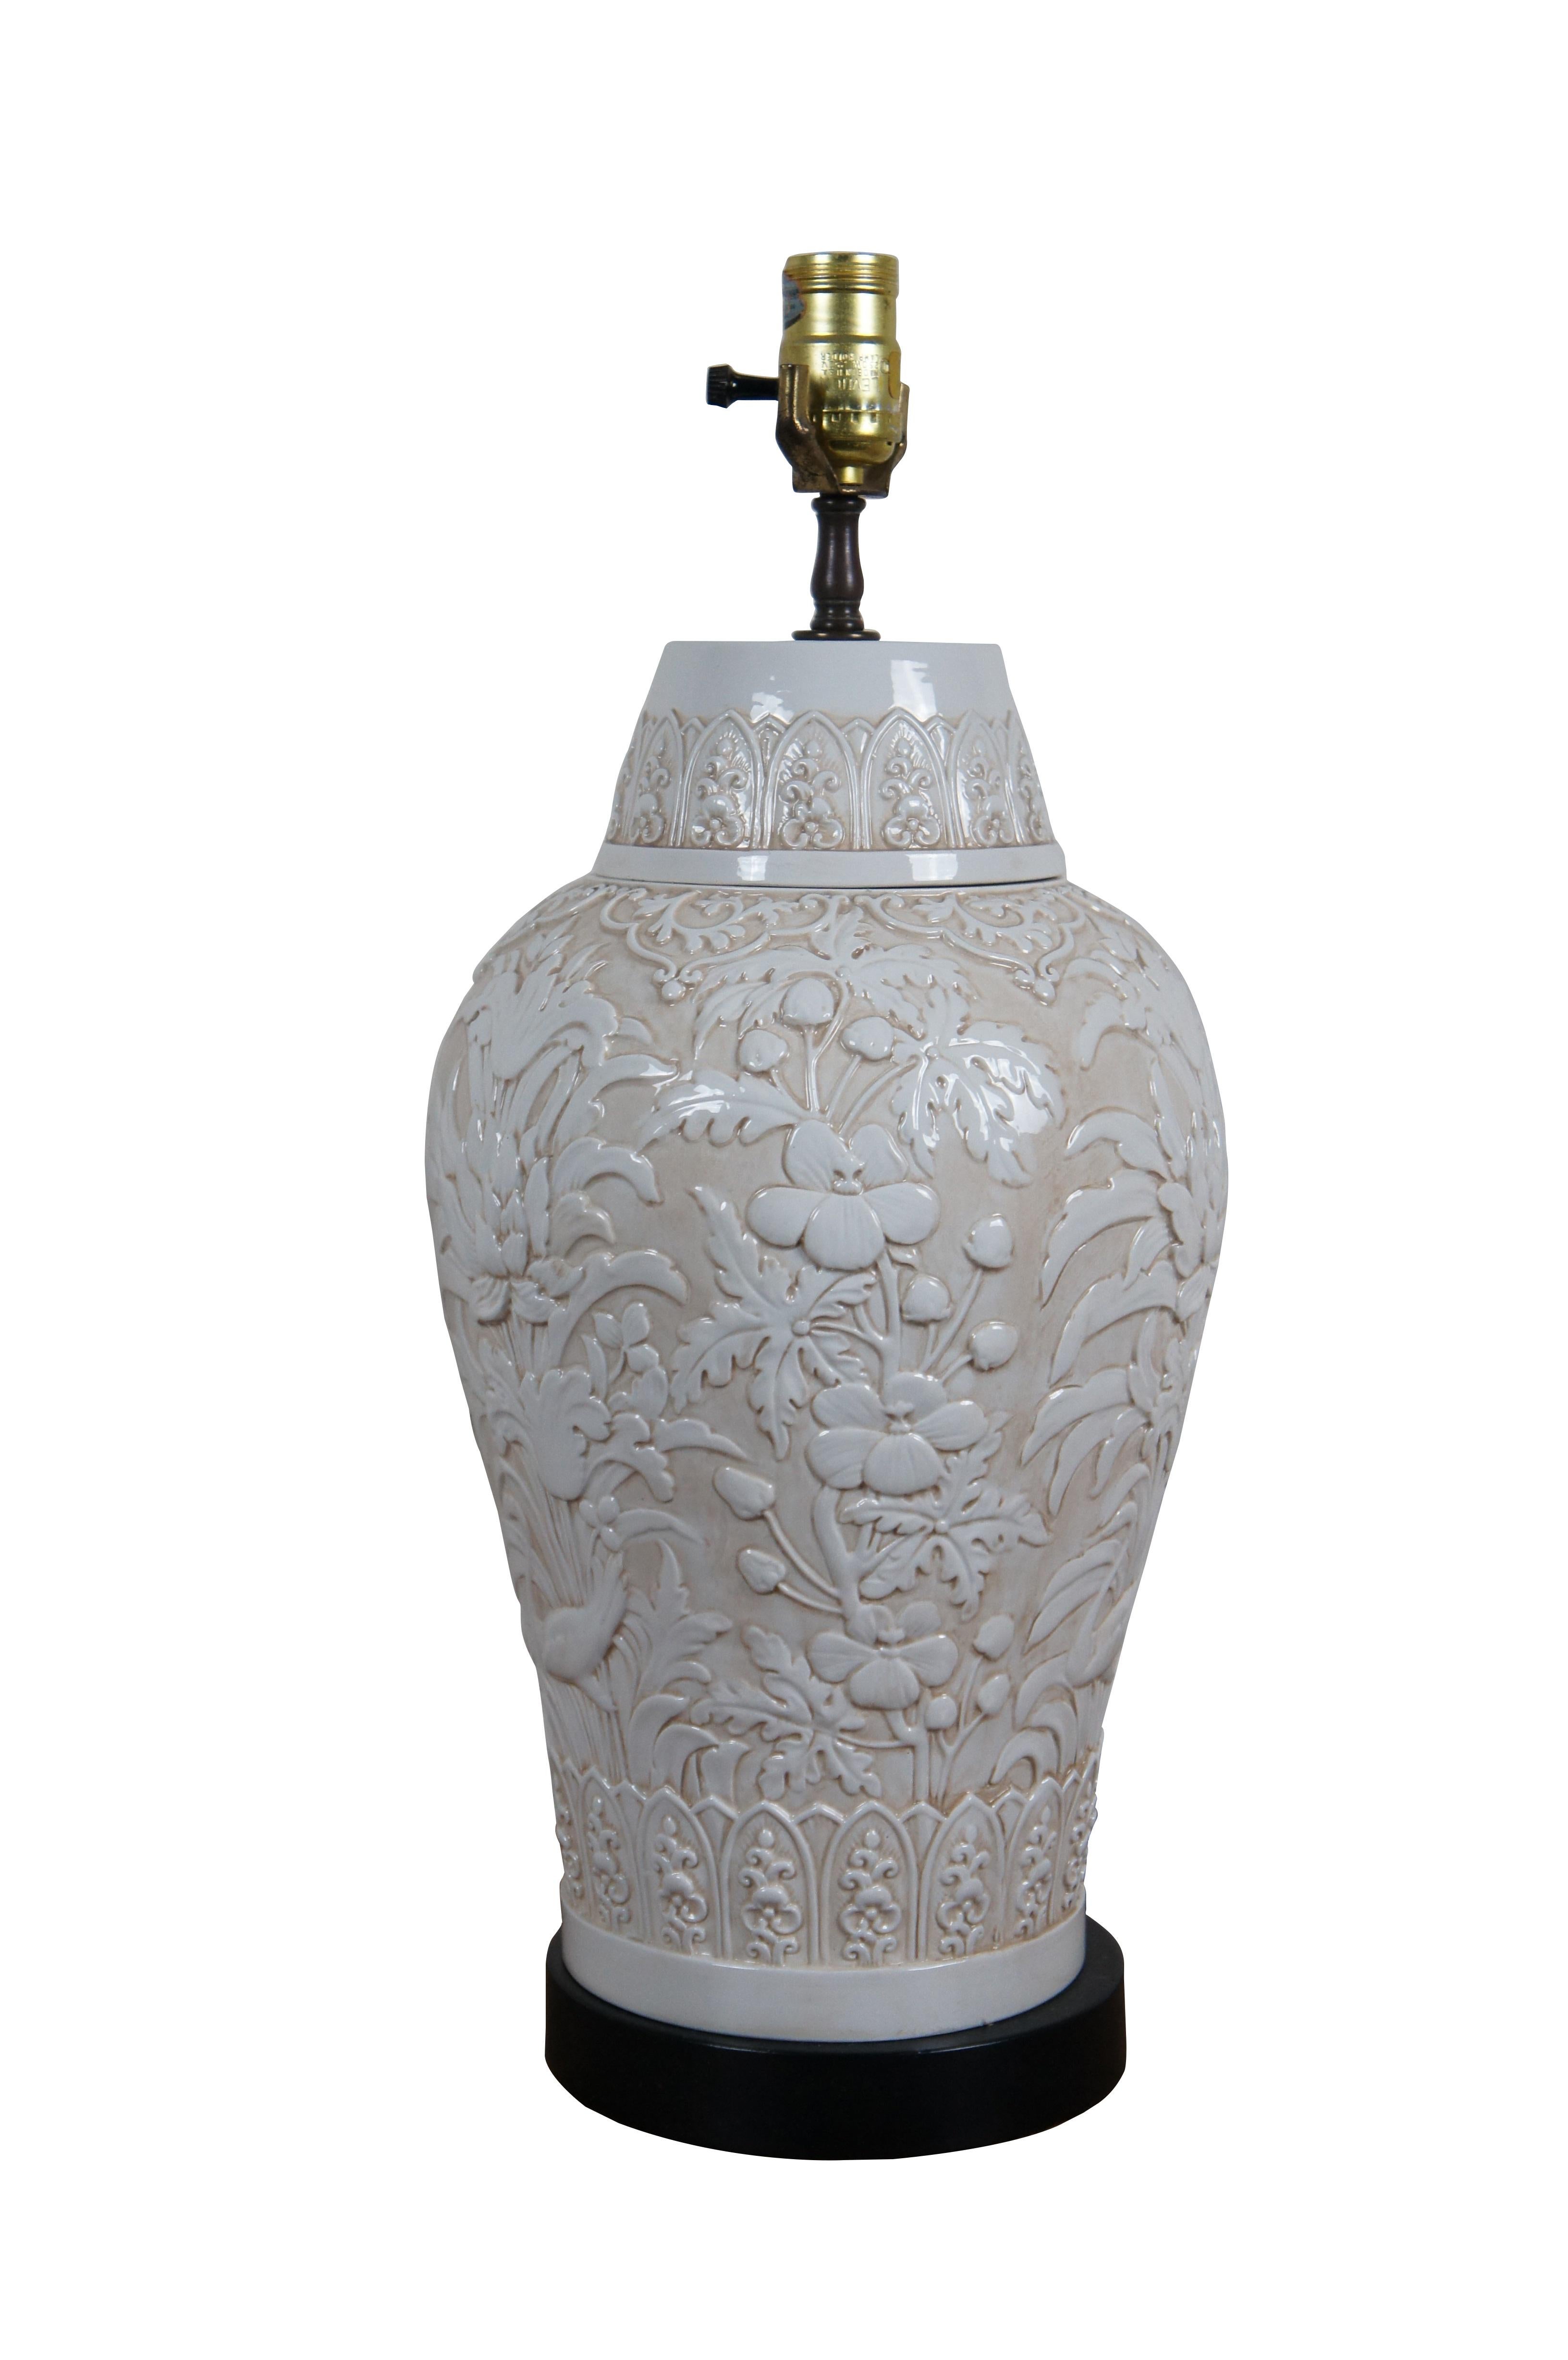 Chinoiseries 1972 Chapman Chinoiserie Lampe de table en porcelaine blanche avec fleurs et oiseaux en relief 21